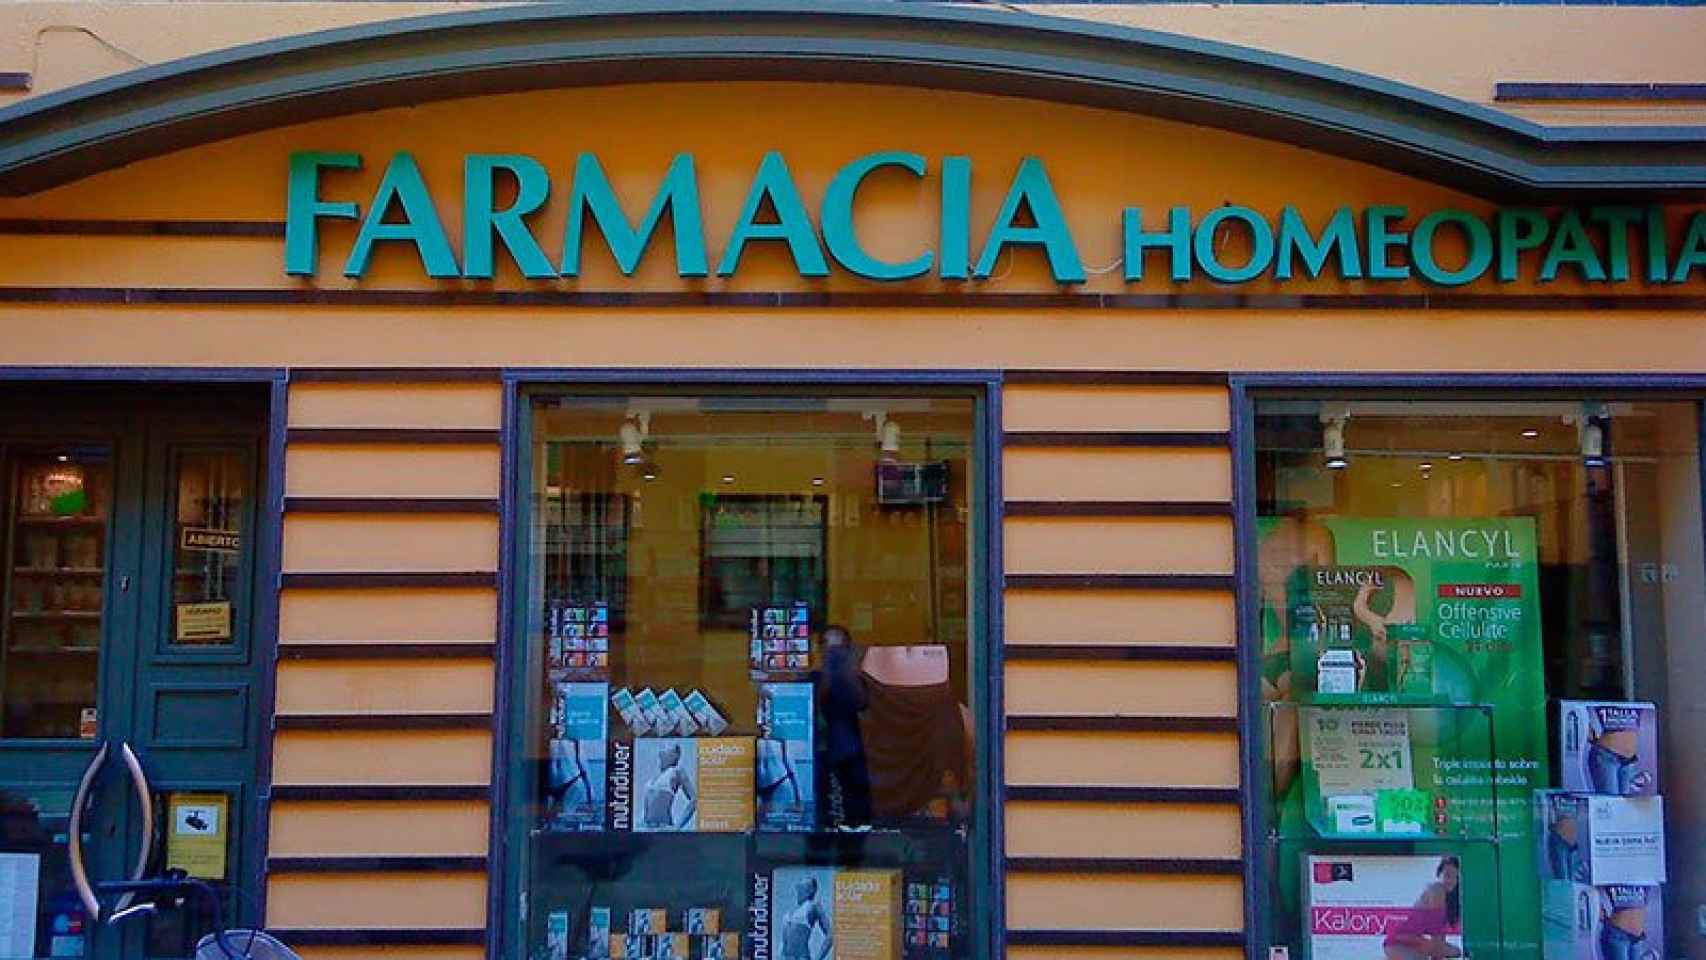 Farmacia en la que se anuncia la venta de productos de homeopatía / CG